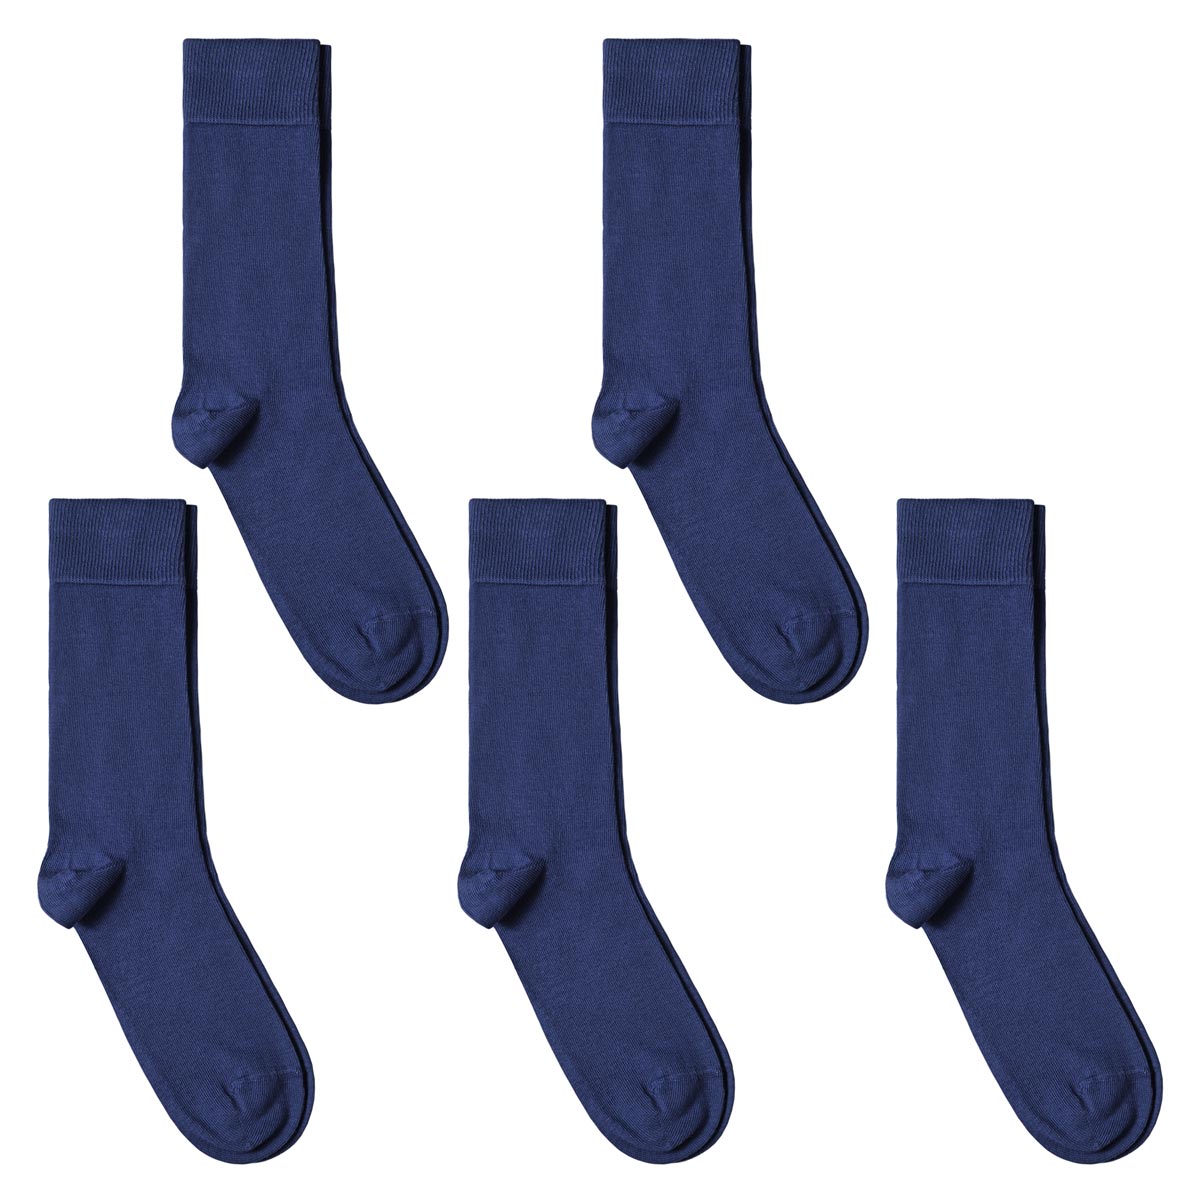 CH-00599_A12-1--_Lot-5-paires-de-chaussettes-homme-bleues-petroles-unies